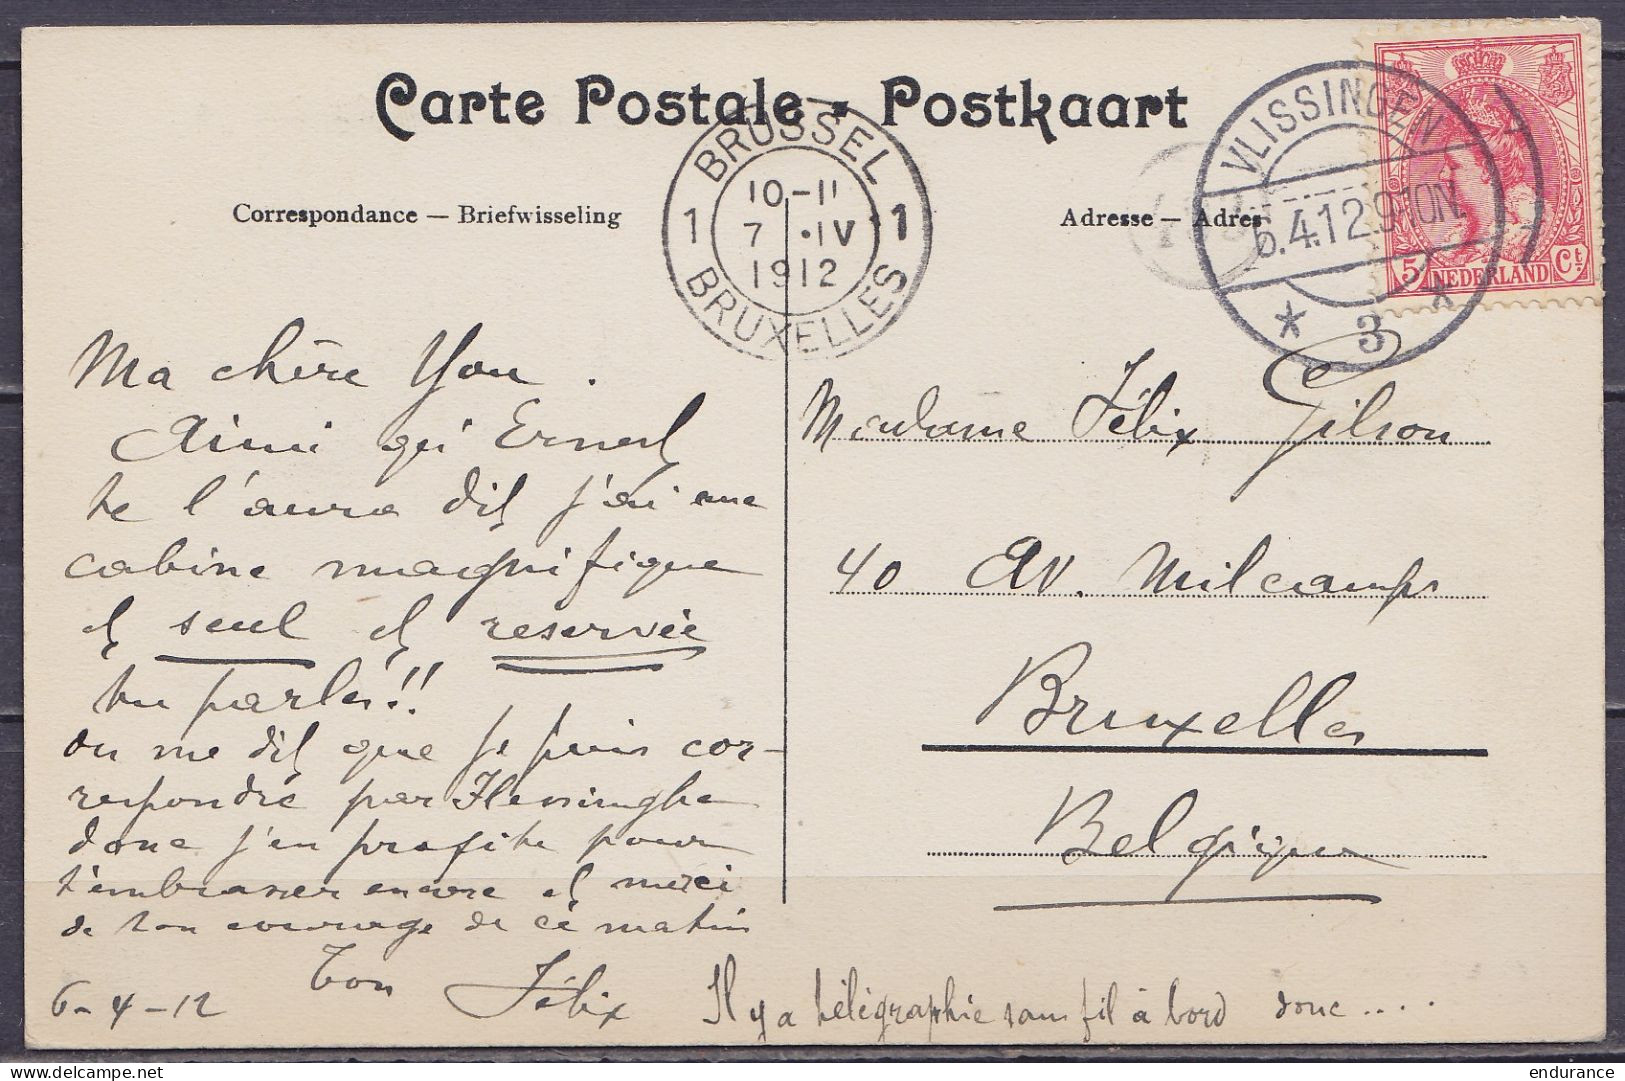 Pays-Bas - CP "S.S. Bruxellesville Compagnie Belge Maritime Du Congo" Affr. 5c Càpt VLISSINGEN /6.4.1912 Pour BRUXELLES - Brieven En Documenten